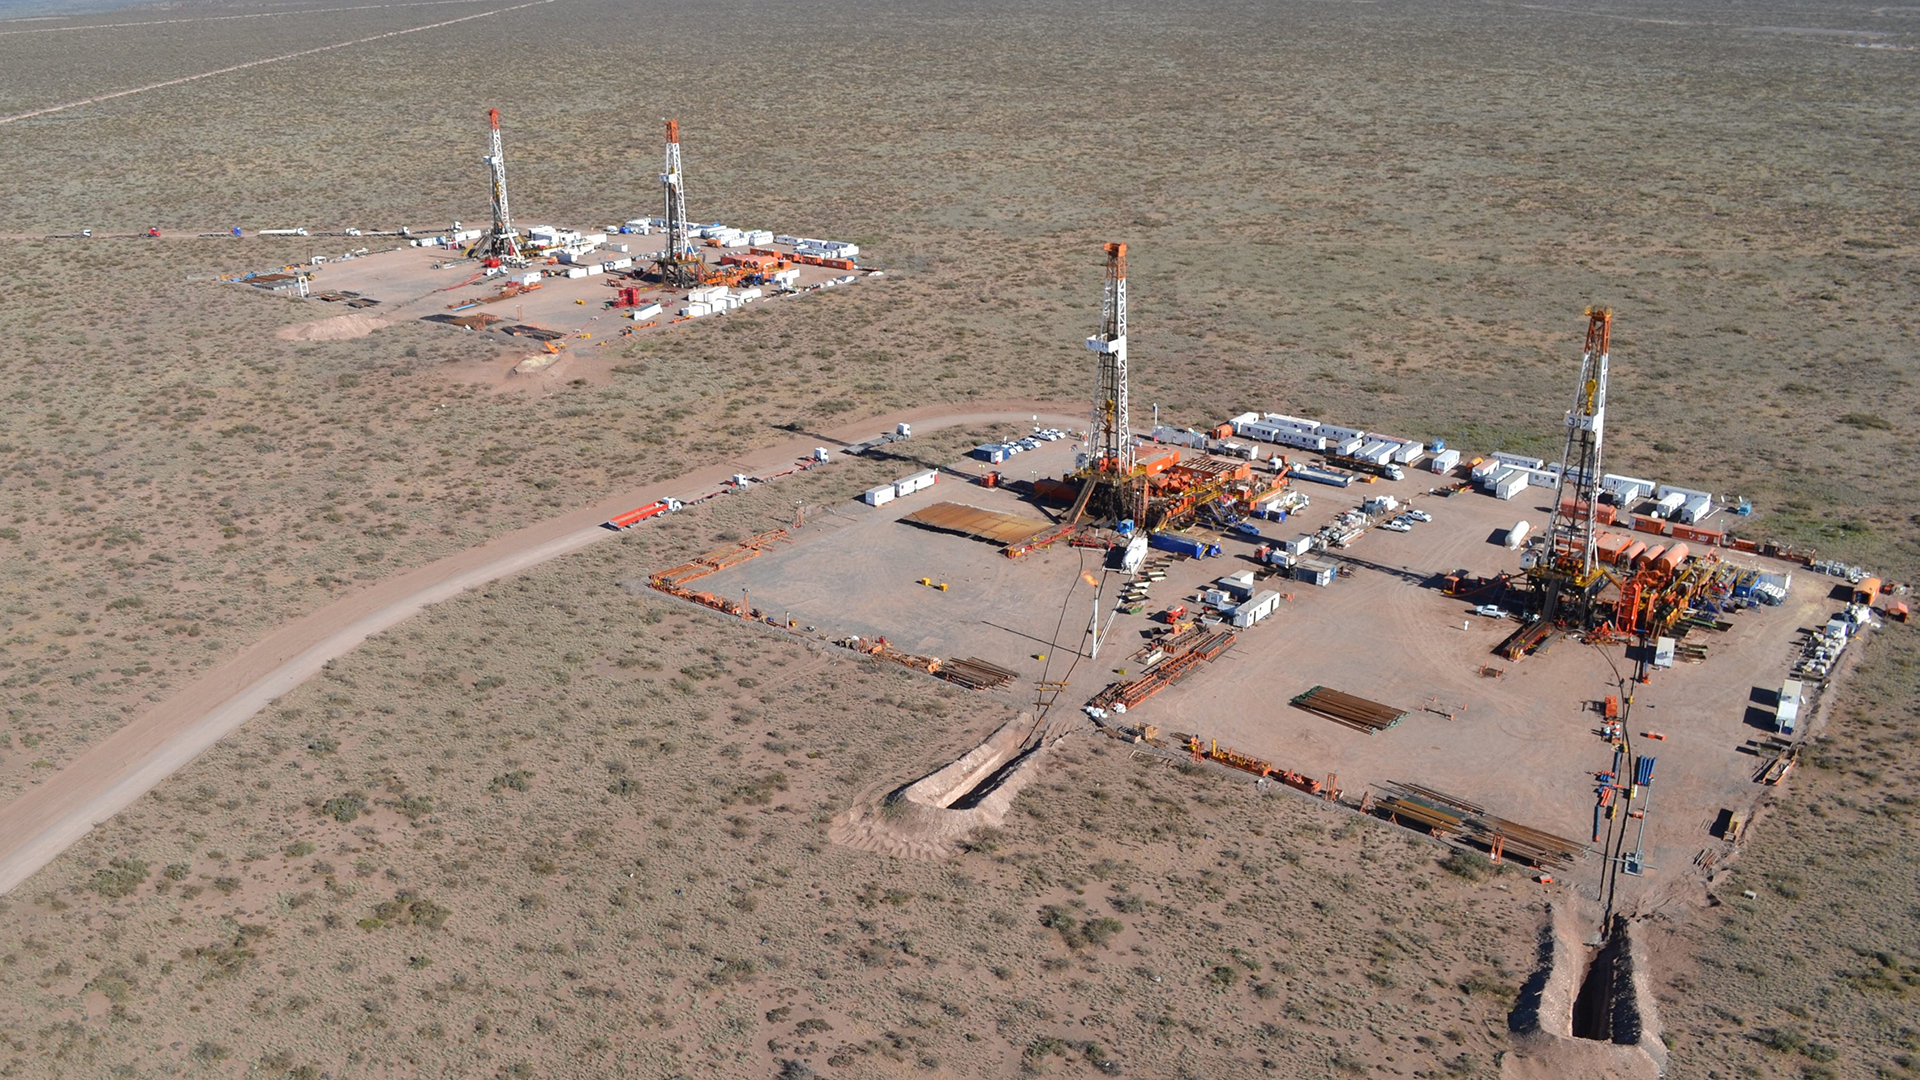 Luftaufnahme von der Vaca Muerta Öl-Förderanlage | picture alliance / dpa